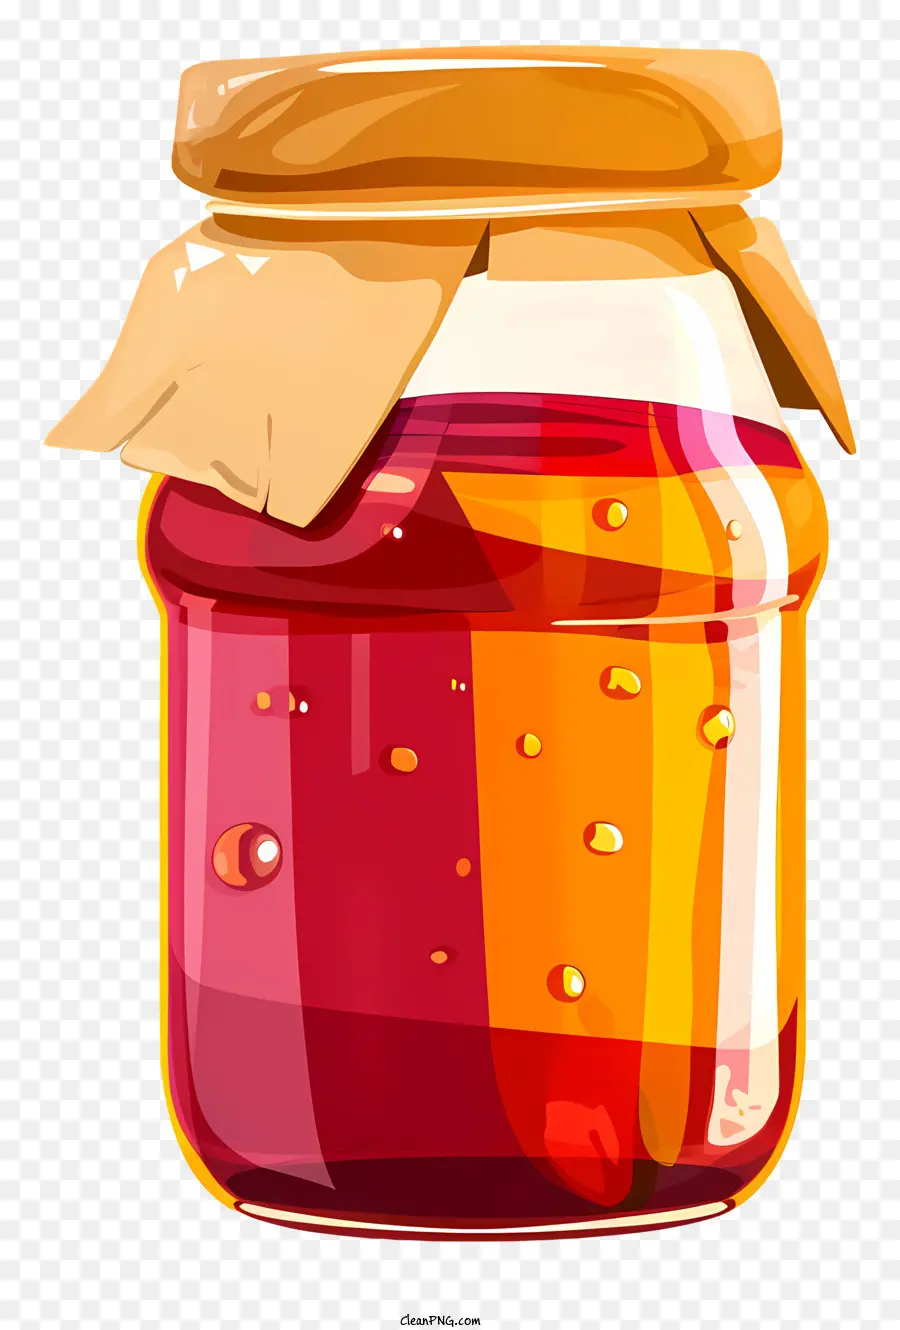 Jam Jar Fruit Preserves Sciroppo Jar Jar Metal Coperchio - Barattolo di sciroppo rosso con coperchio marrone